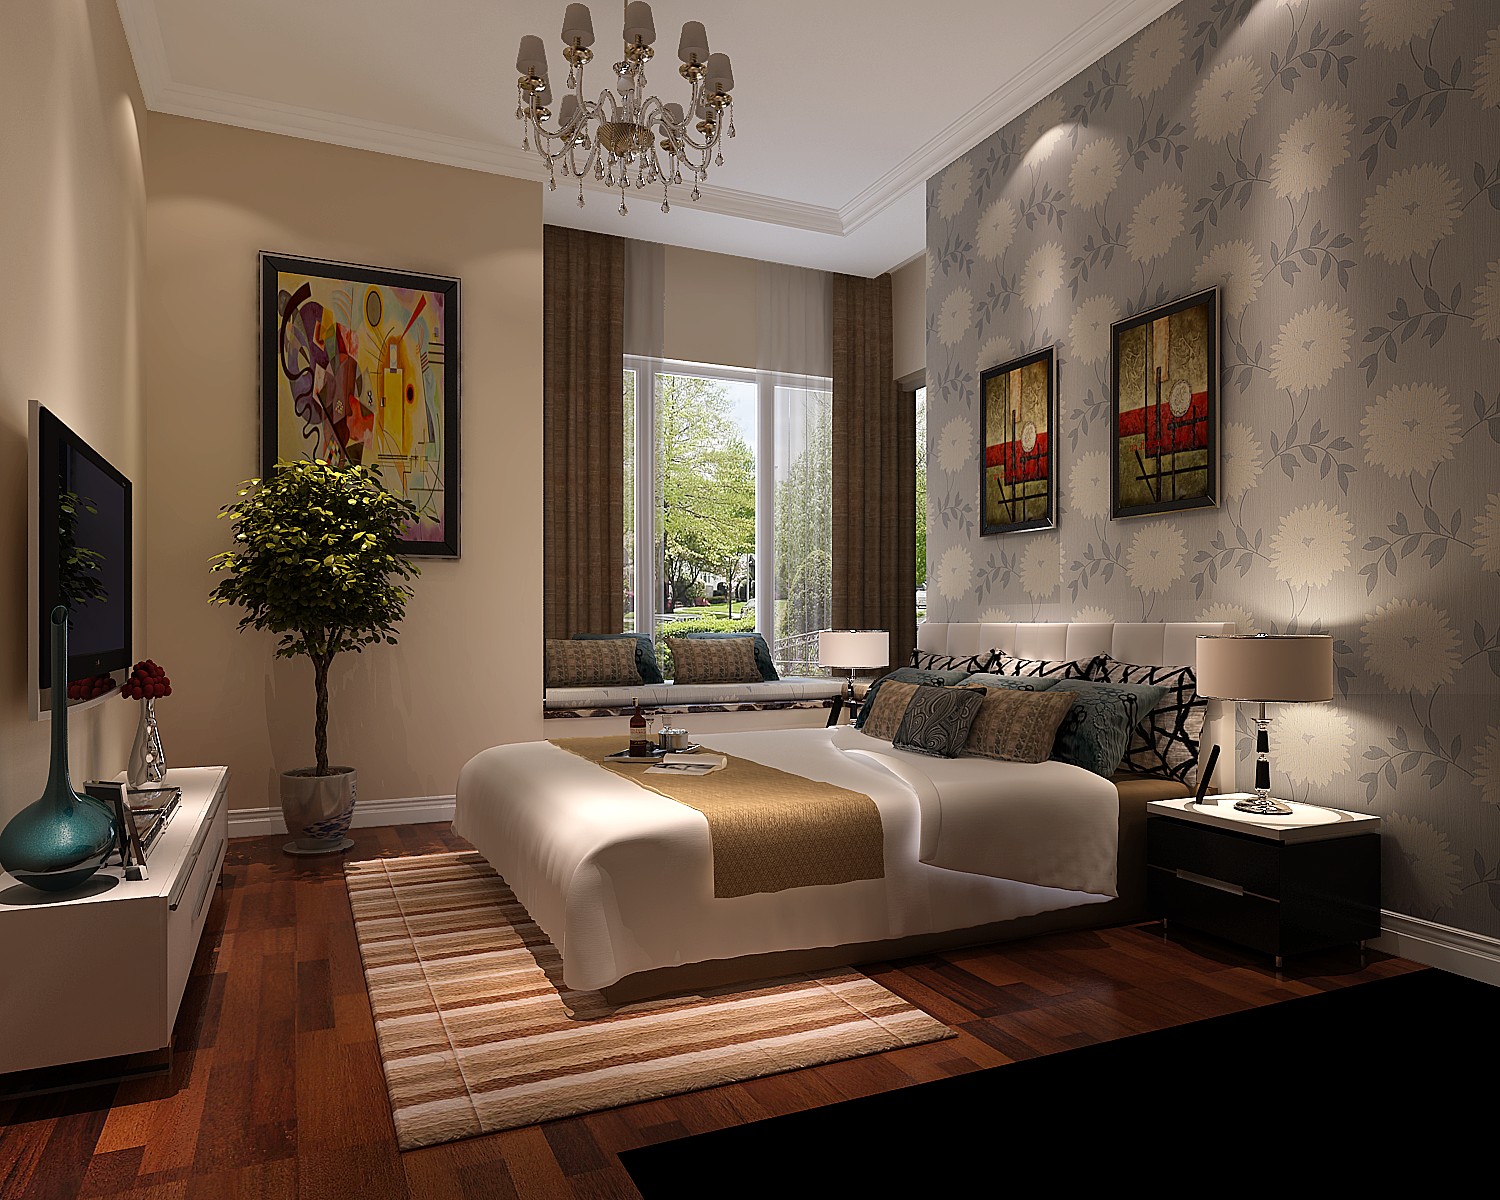 二居 简约 公寓 改装 卧室图片来自高度国际装饰宋增会在正源尚风尚水70平米简约风格改装的分享